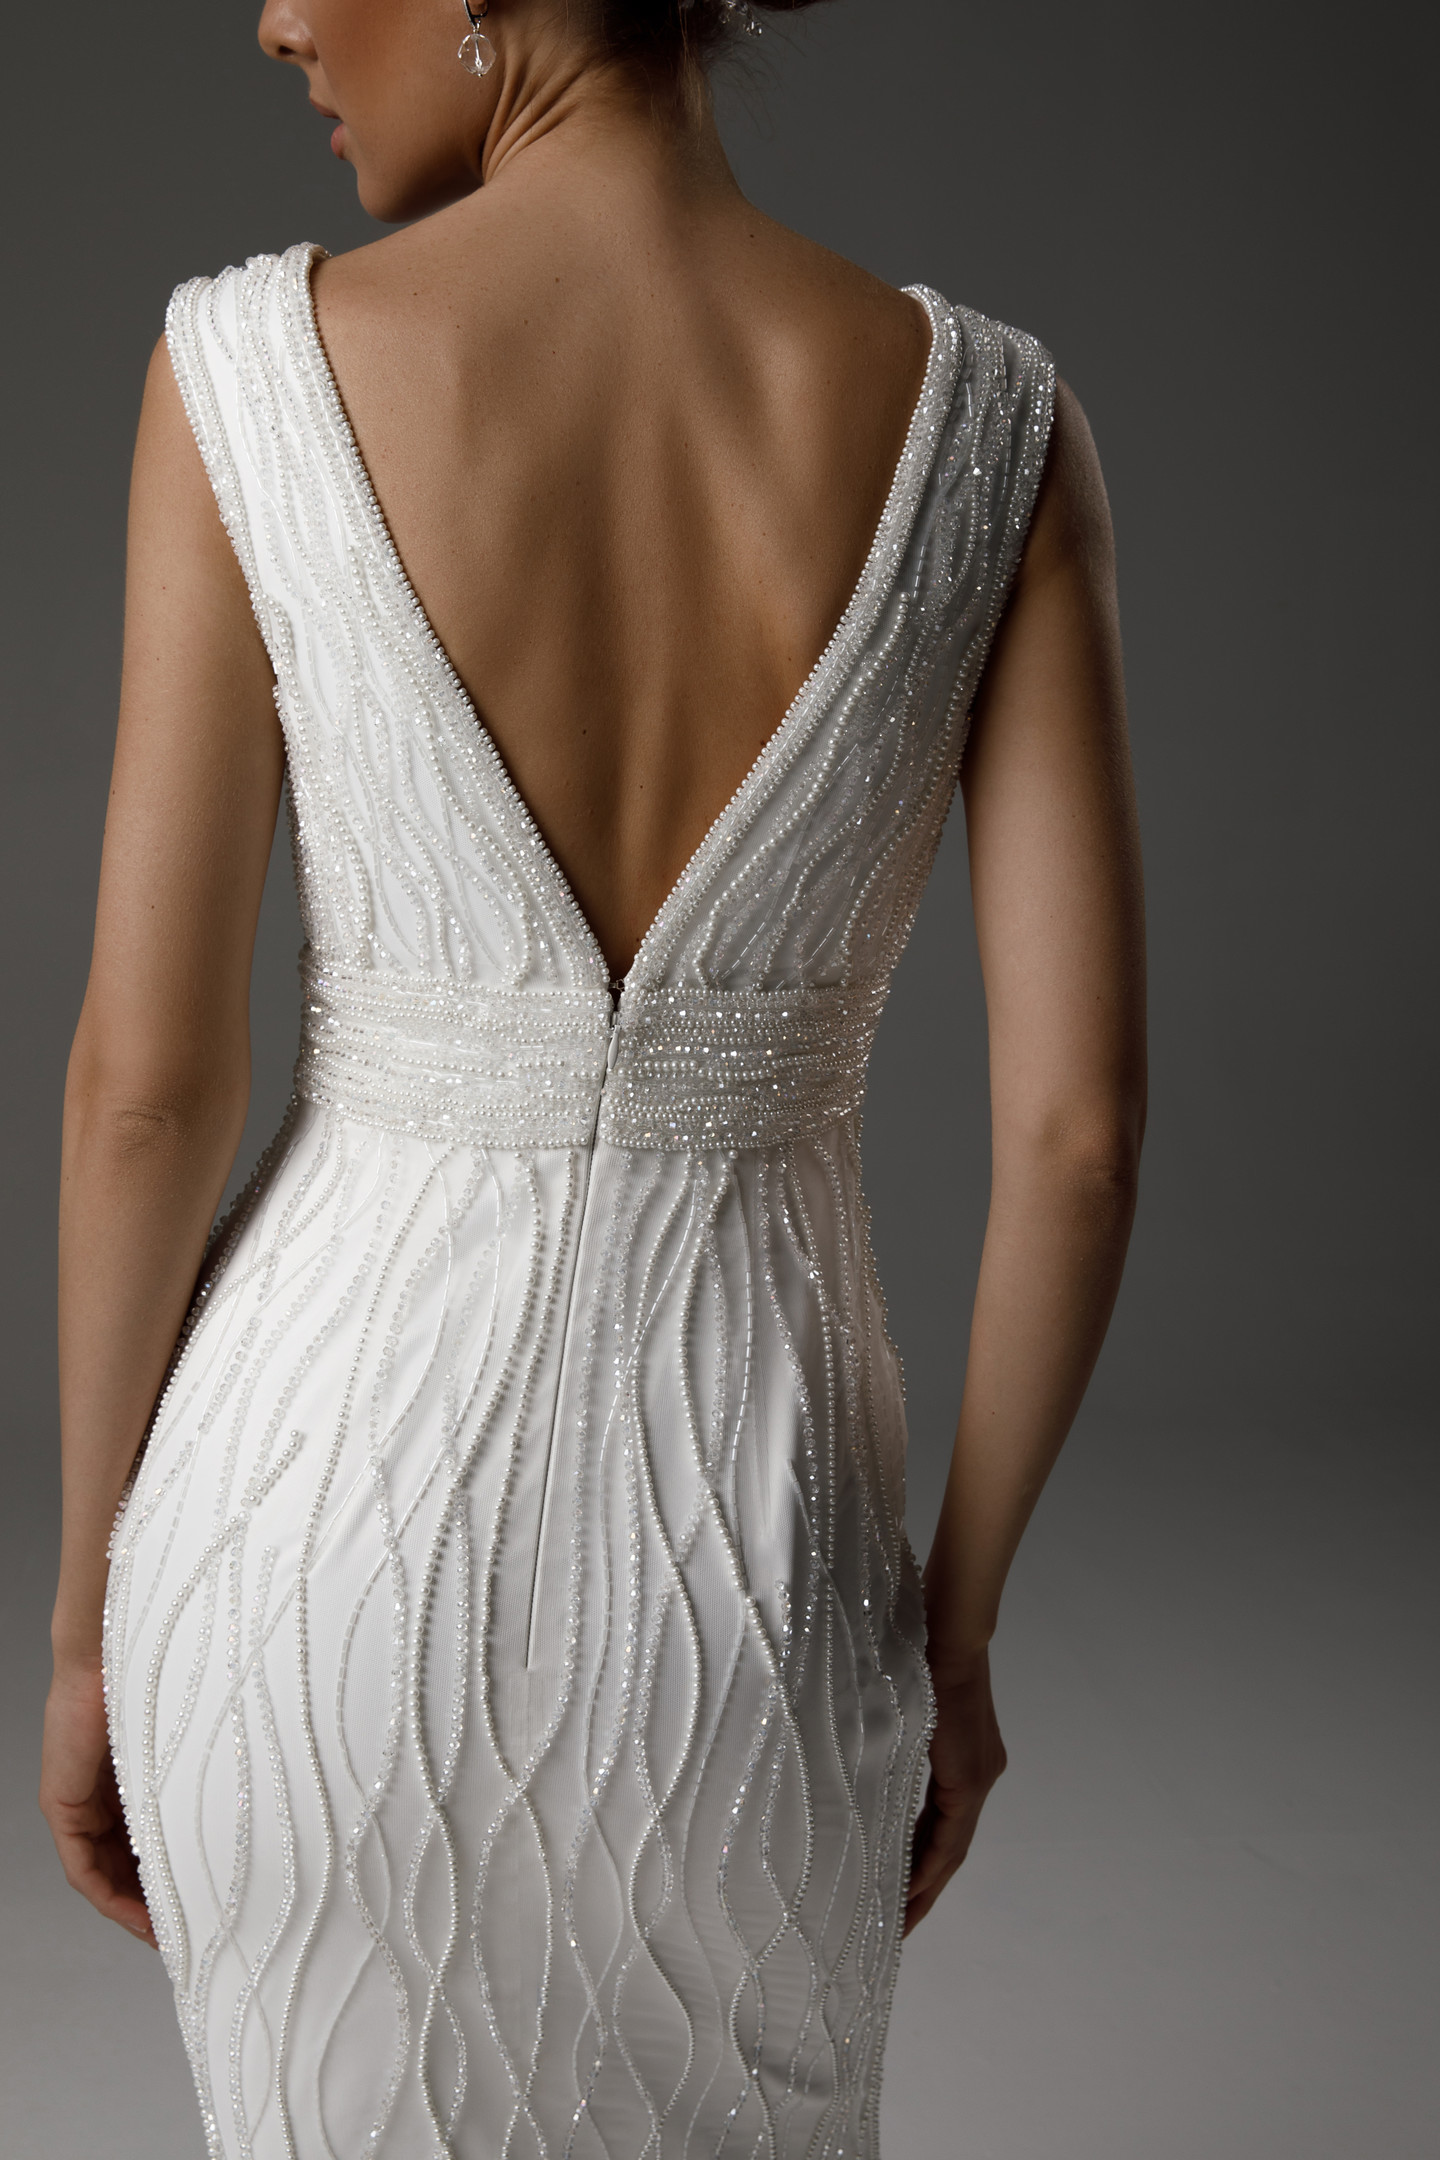 Платье Руна, 2021, одежда, платье, свадебное, молочно-белый, вышивка, прямой силуэт, популярное